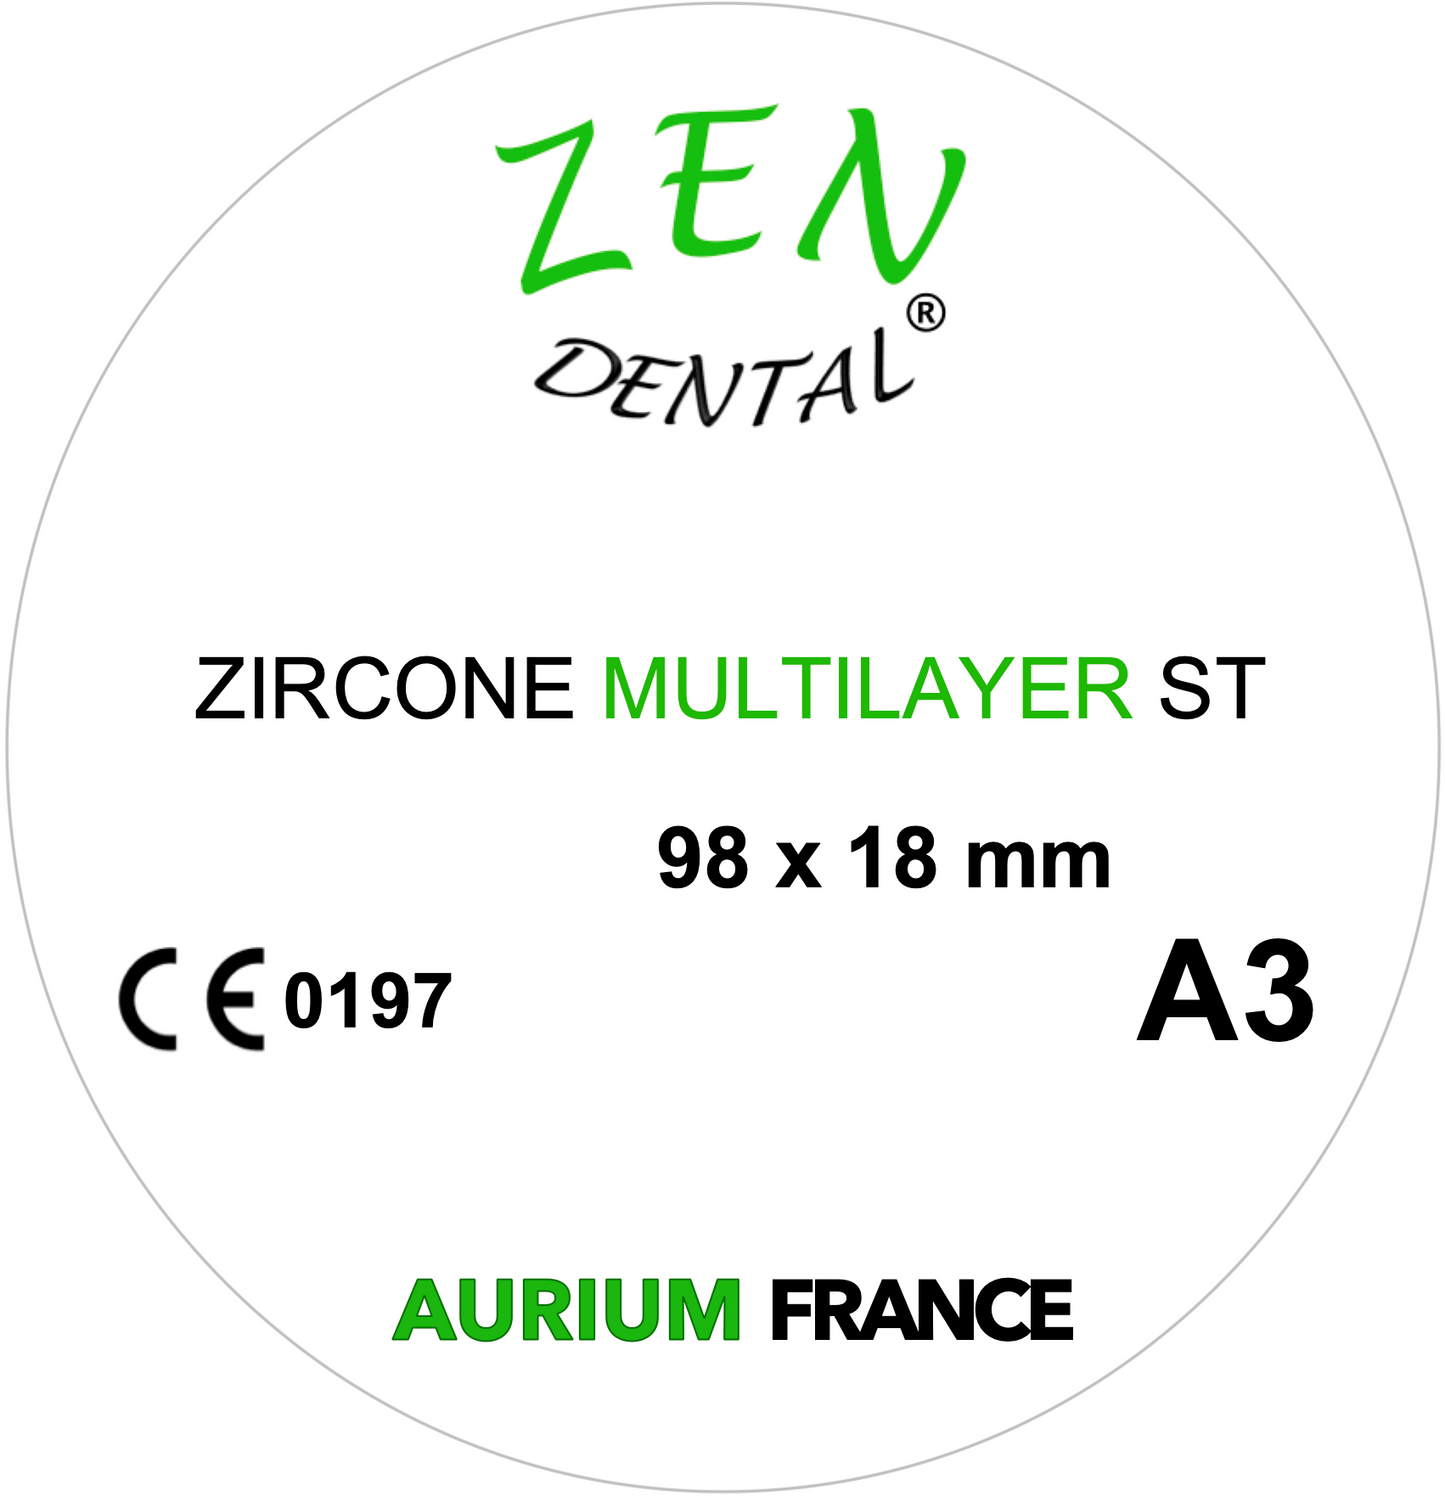 Zircone Multilayer ZEN DENTAL